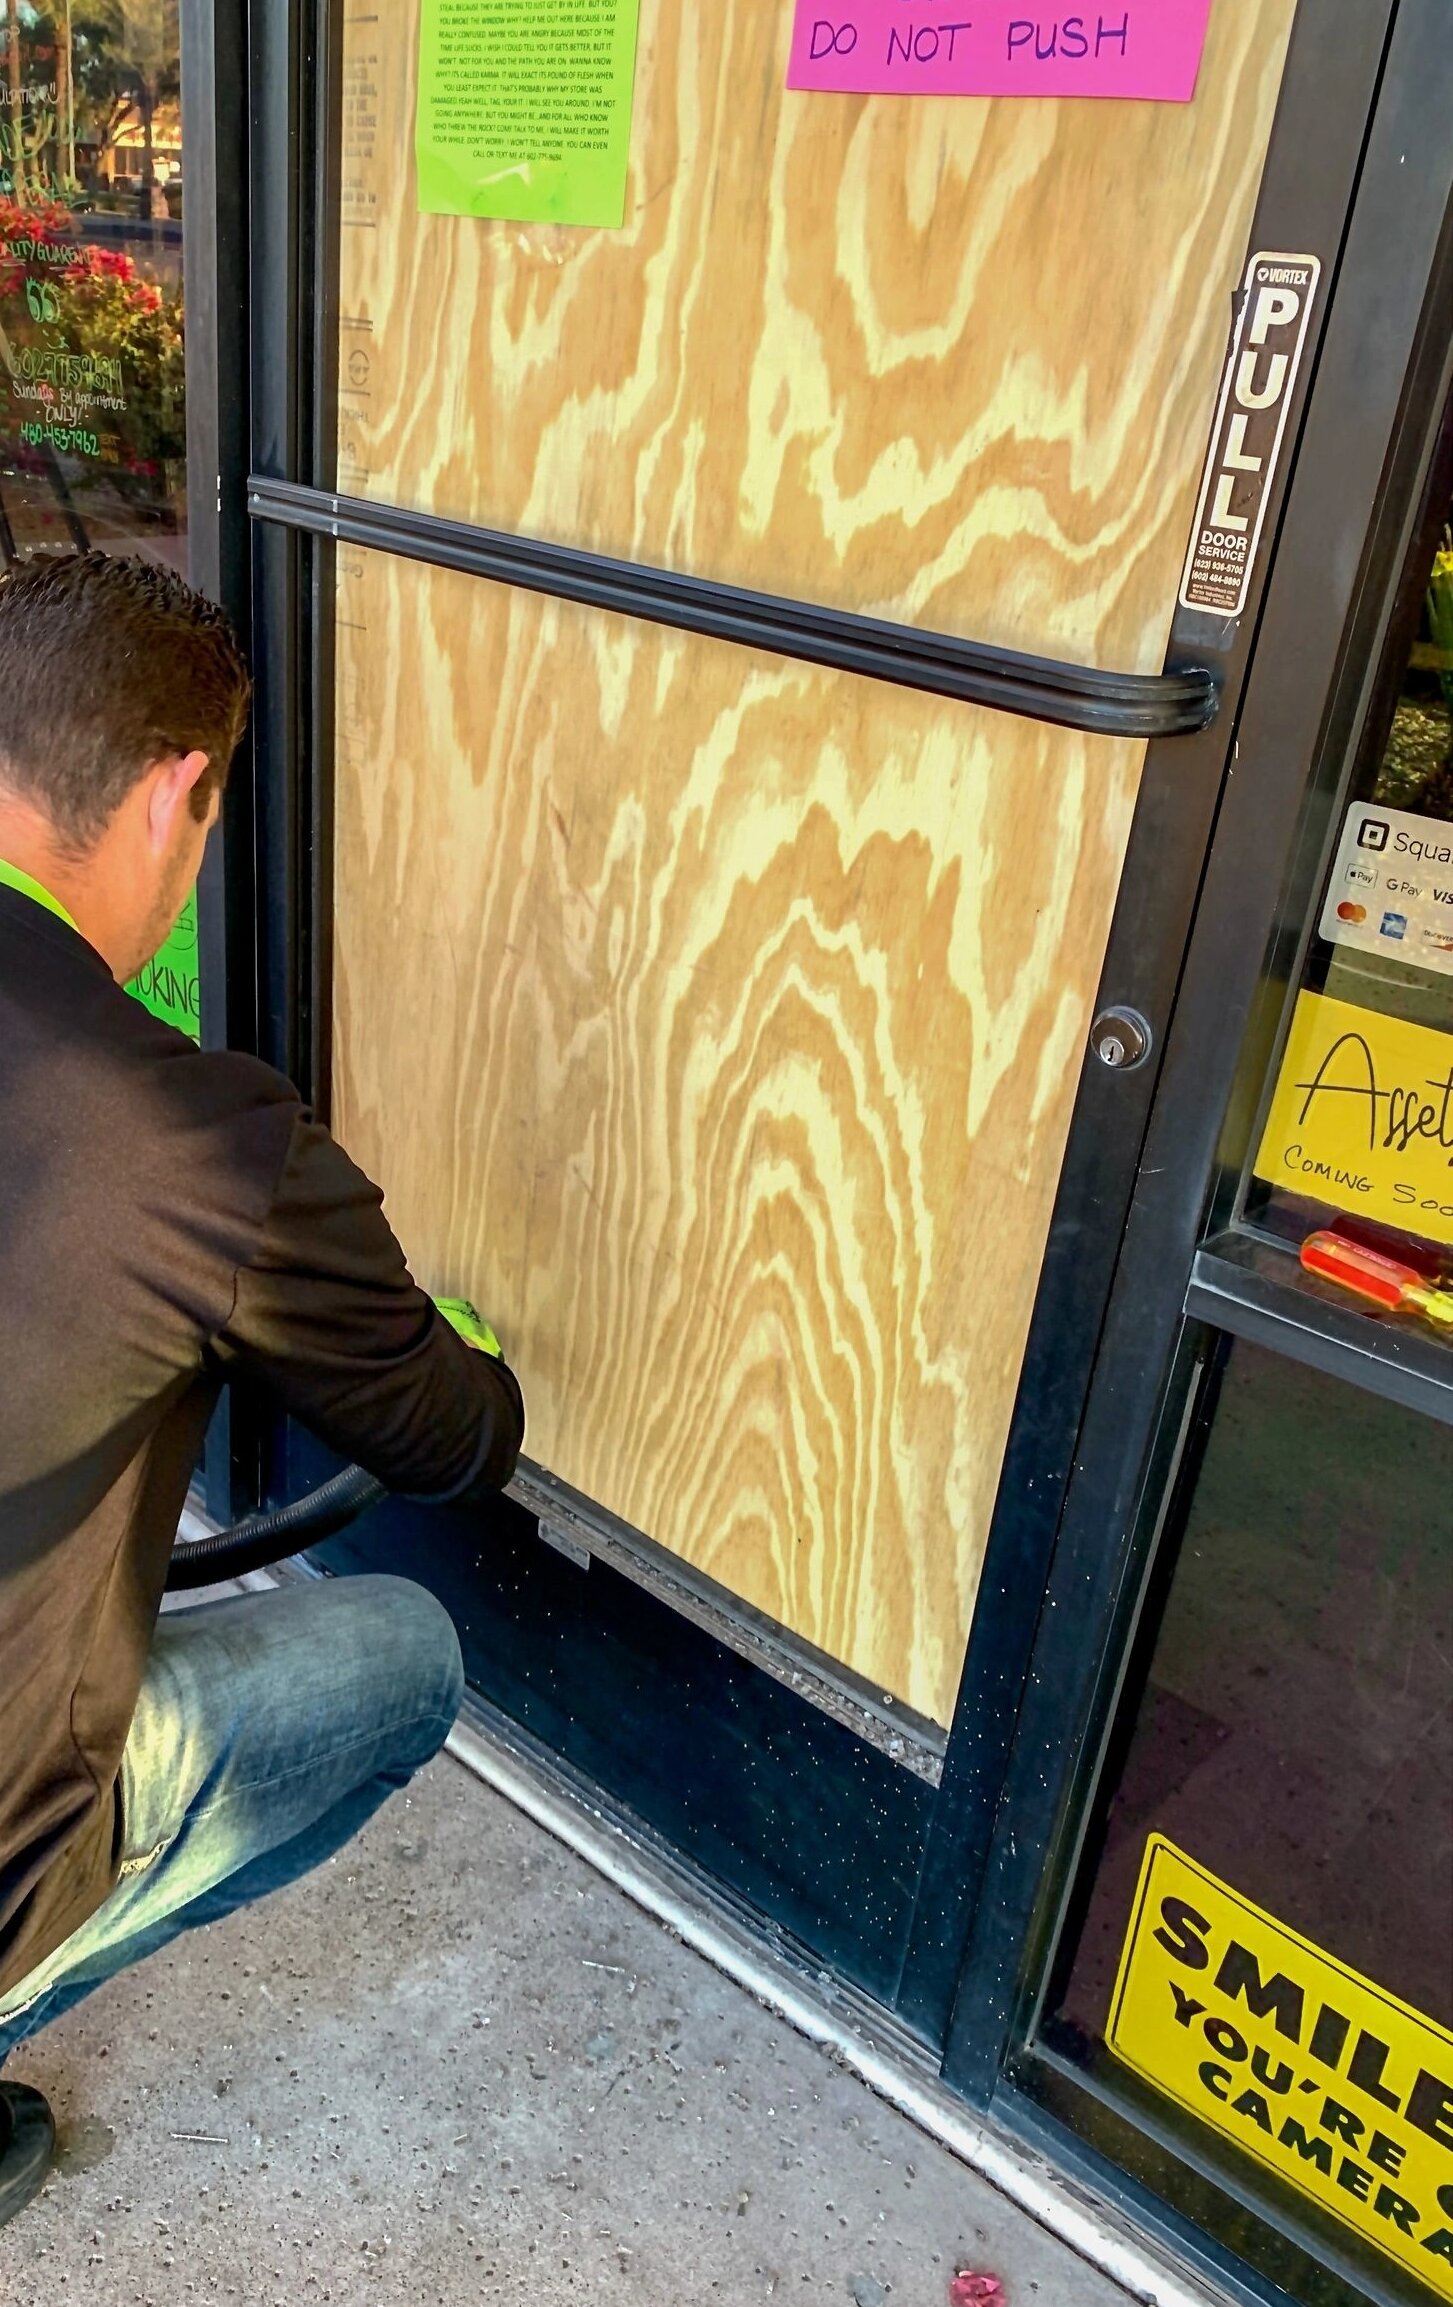 Door Glass Repair & Replacement San Diego, CA